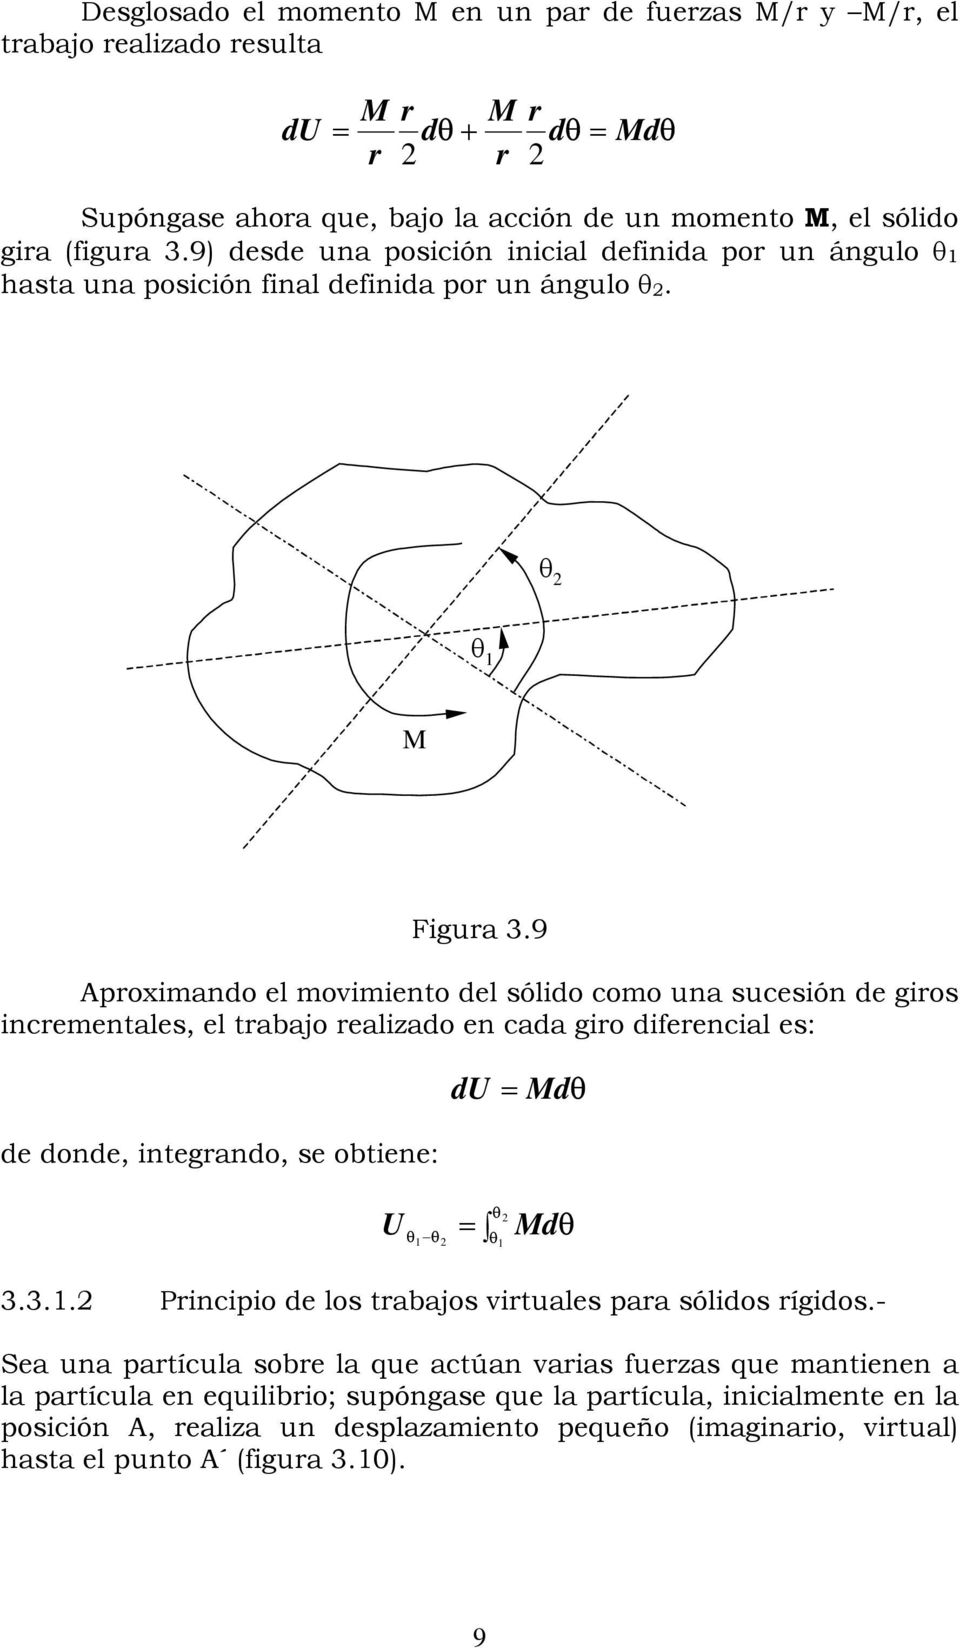 9 proximando el movimiento del sólido como una sucesión de giros incrementales, el trabajo realizado en cada giro diferencial es: de donde, integrando, se obtiene: du = Md U = Md 3.